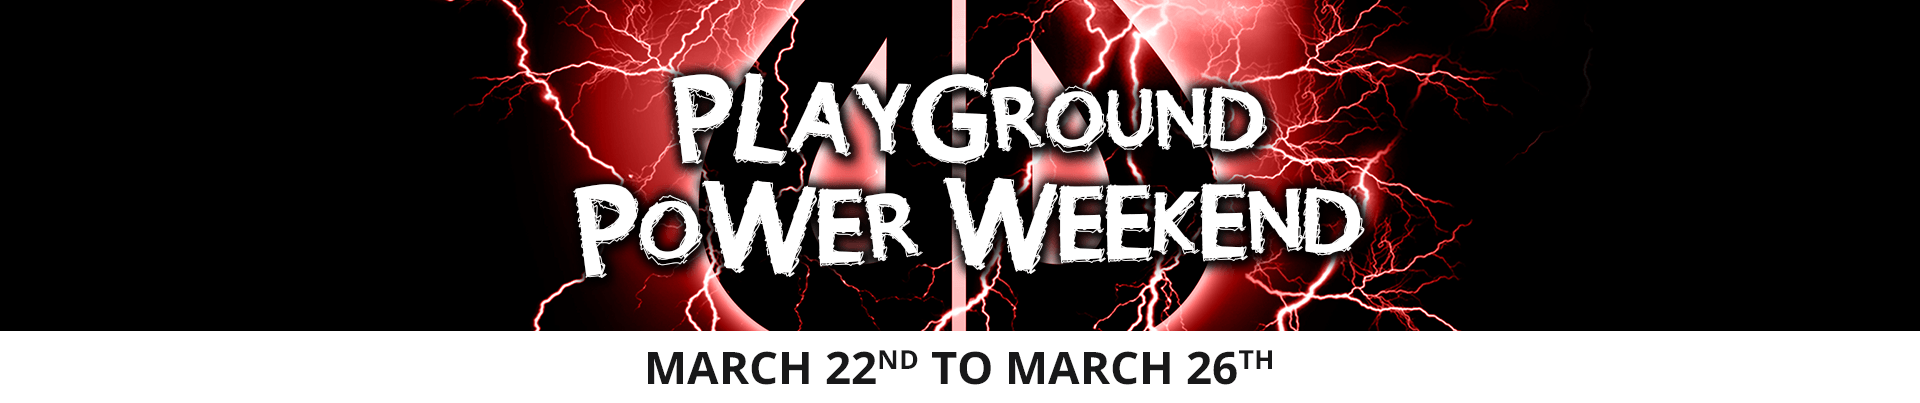 Playground Power Weekend March 2018